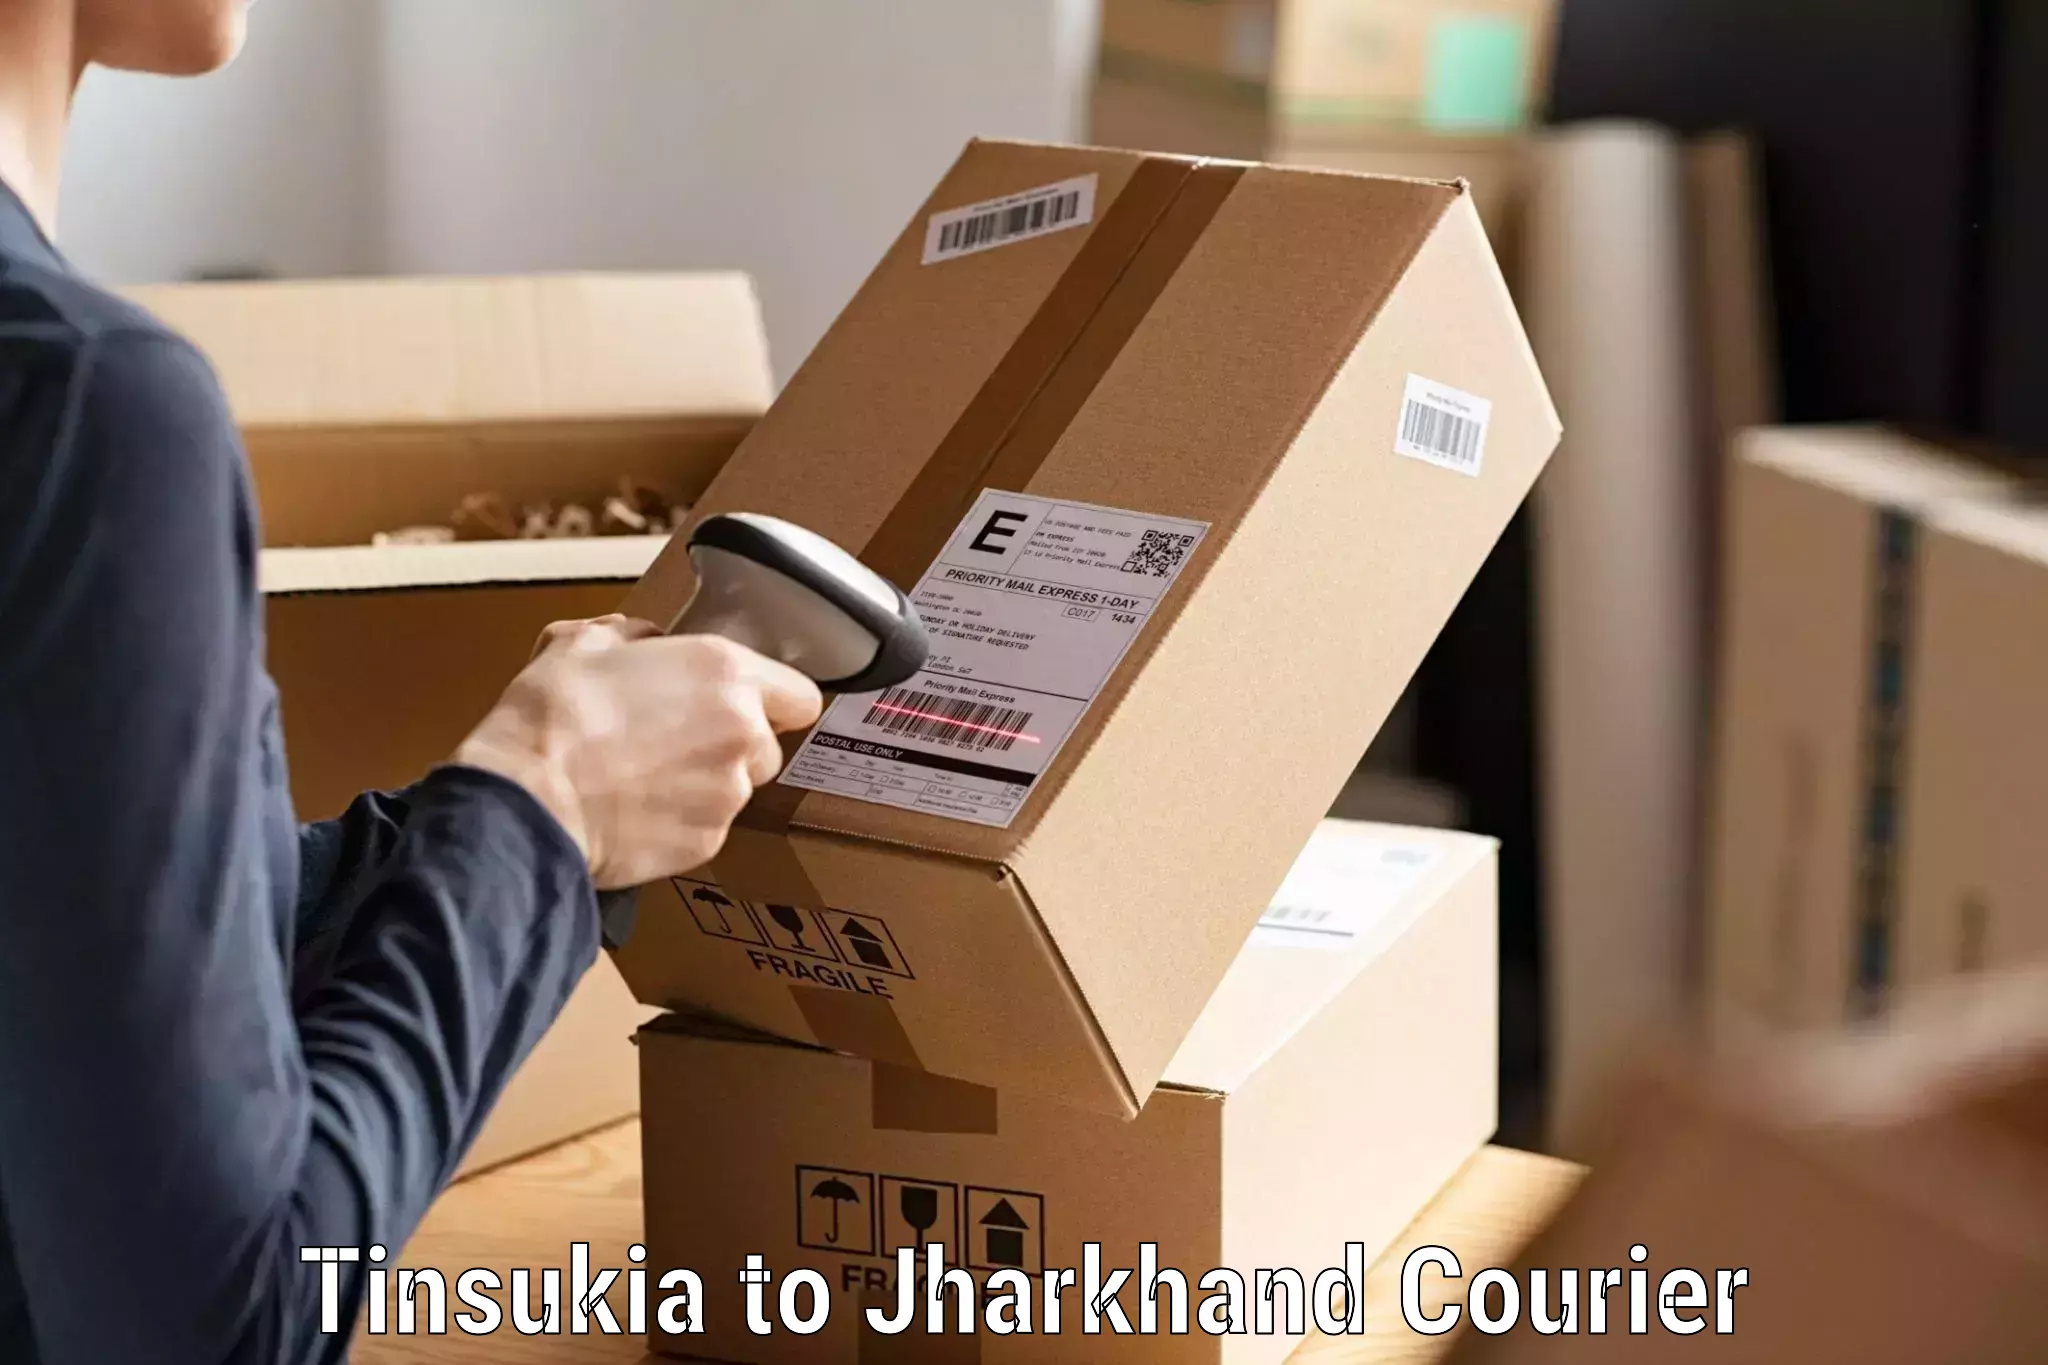 Reliable parcel services Tinsukia to Manoharpur